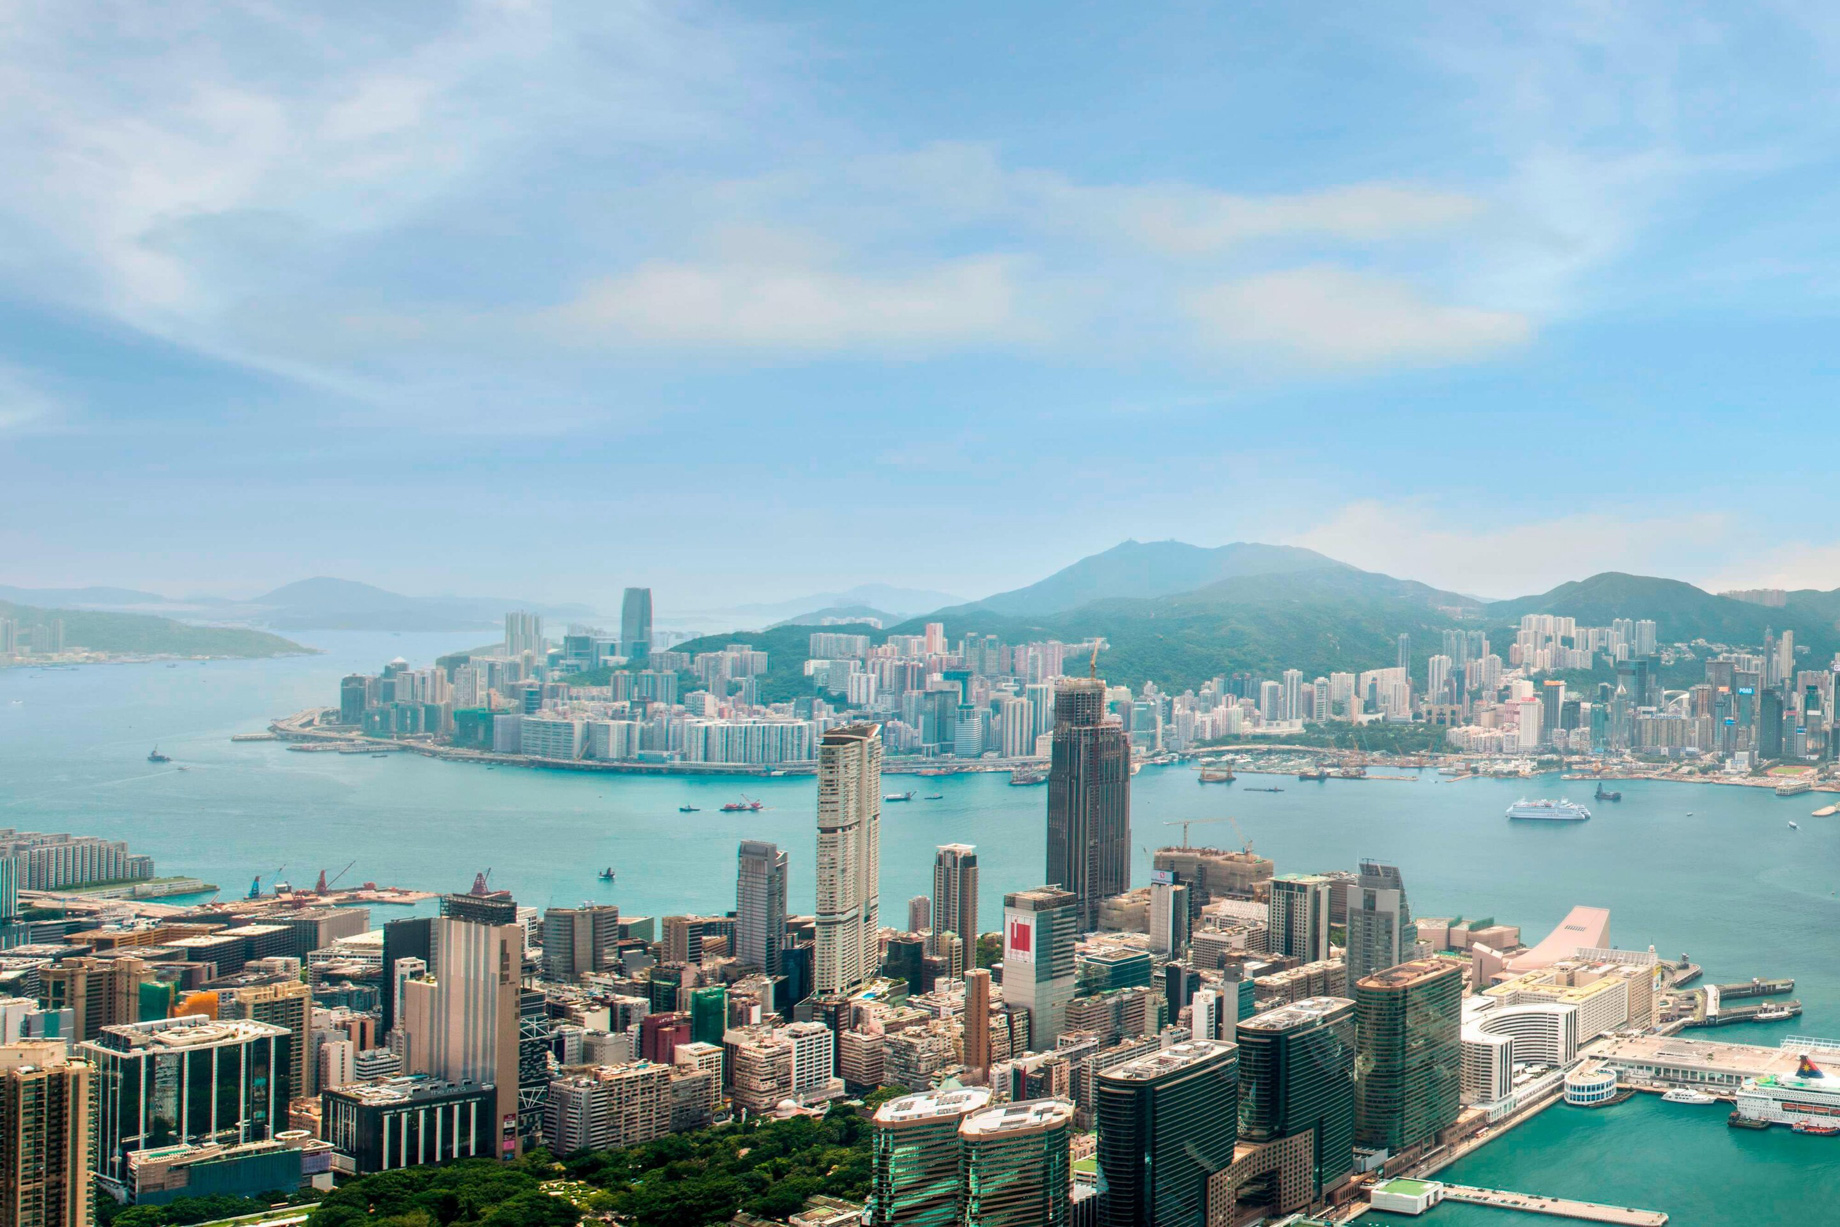 W Hong Kong Hotel – Hong Kong – Hong Kong Panoramic View